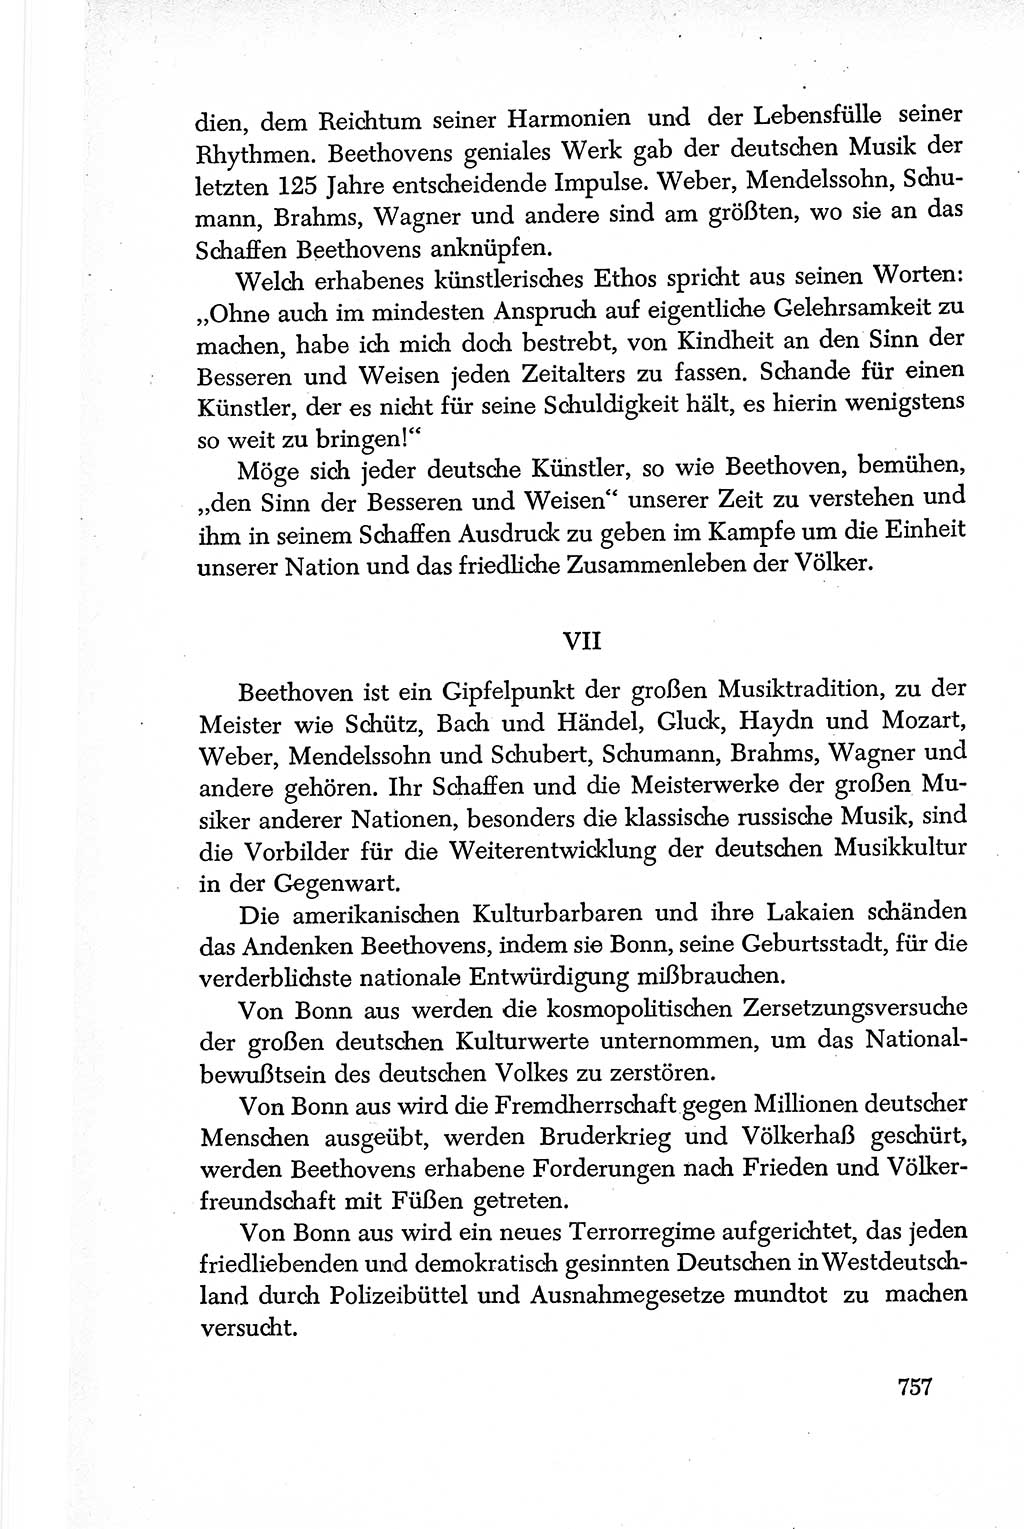 Dokumente der Sozialistischen Einheitspartei Deutschlands (SED) [Deutsche Demokratische Republik (DDR)] 1950-1952, Seite 757 (Dok. SED DDR 1950-1952, S. 757)